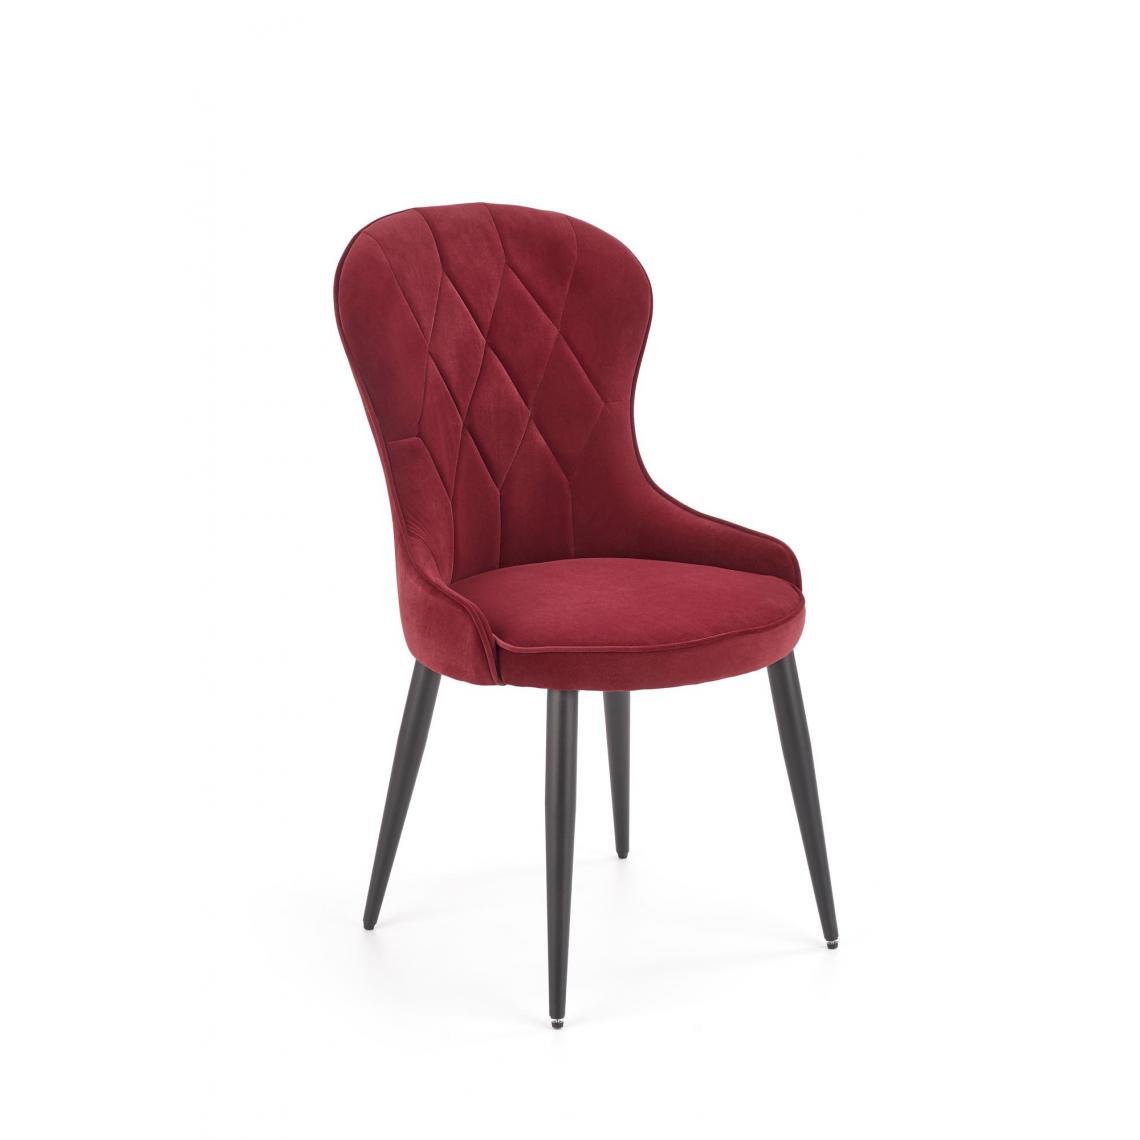 Hucoco - KADMOS - Chaise rembourrée style moderne salon/chambre - 92x58x52 - Pieds en acier - Meuble de salle à manger - Rouge - Chaises